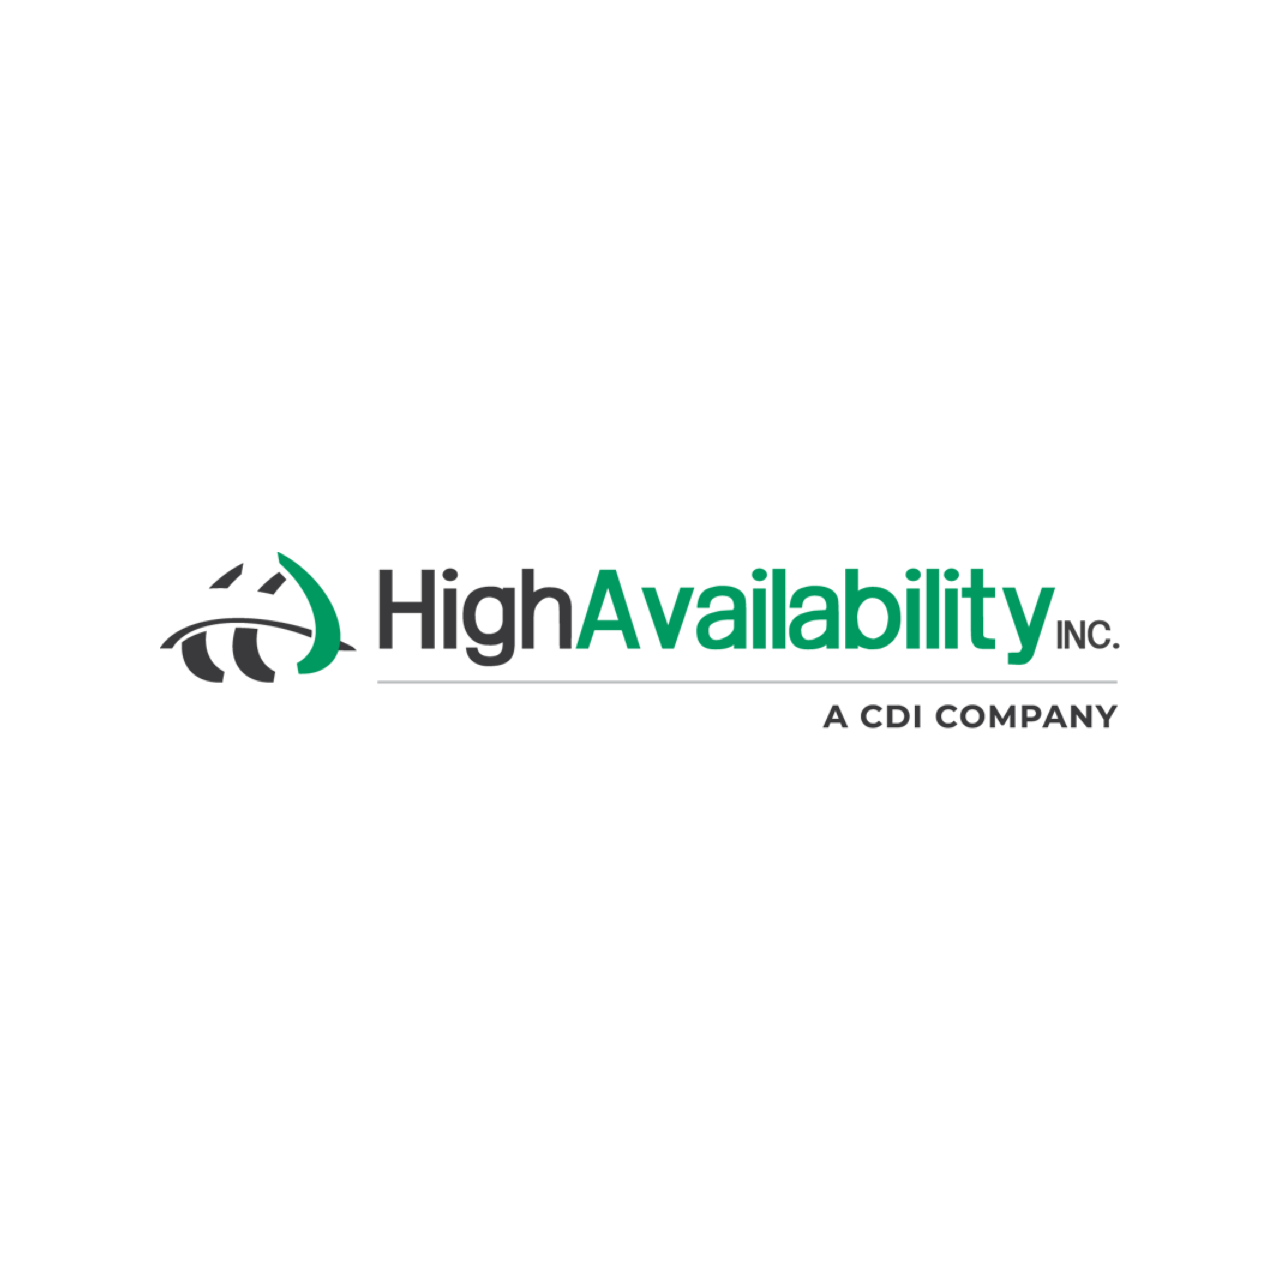 High Availability Inc